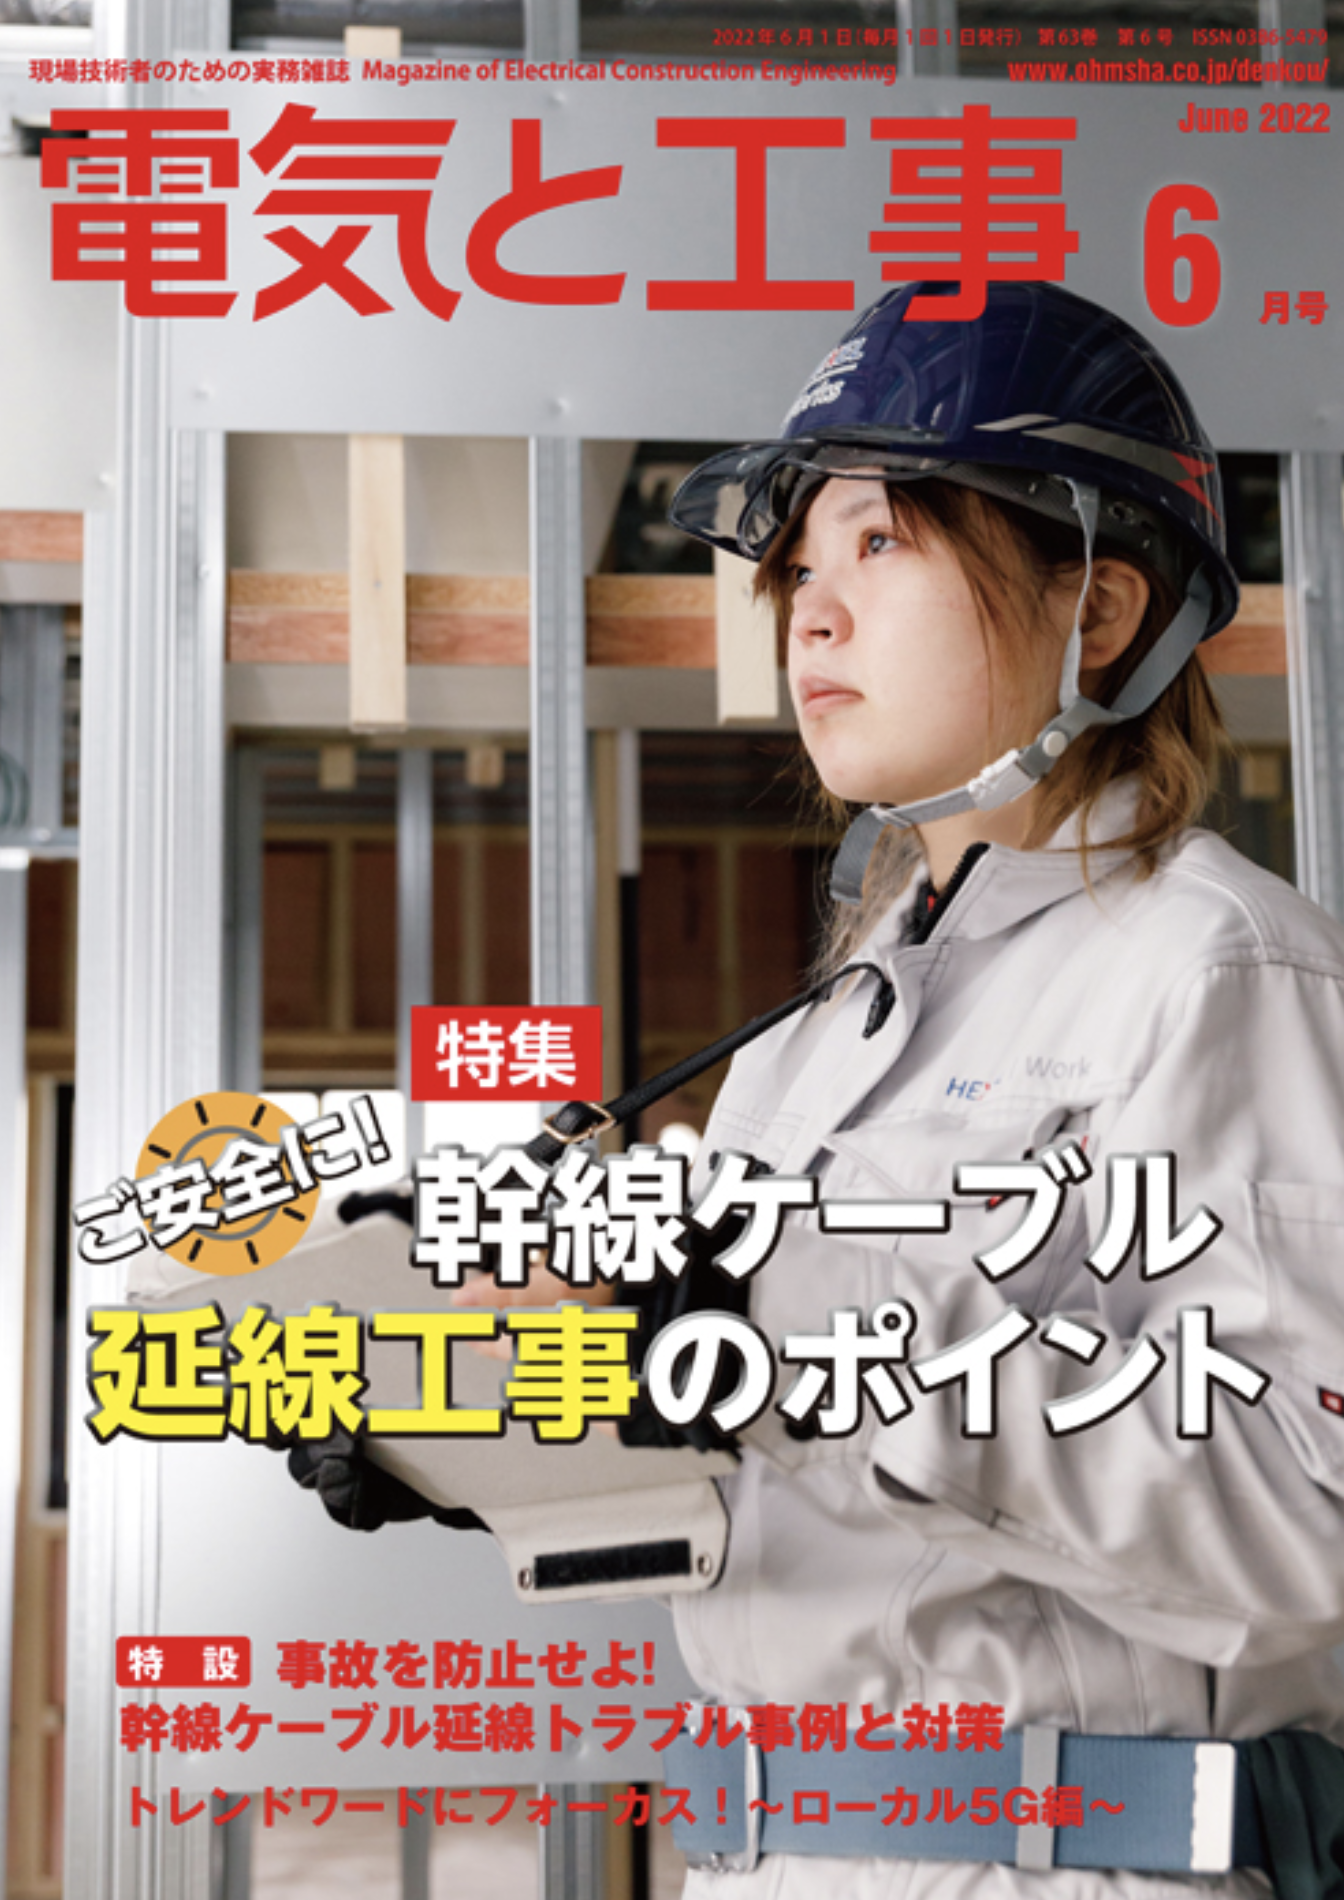 【新刊トピックス 2022年5月】電気と工事 2022年6月号 (第63巻第6号通巻826号)の画像